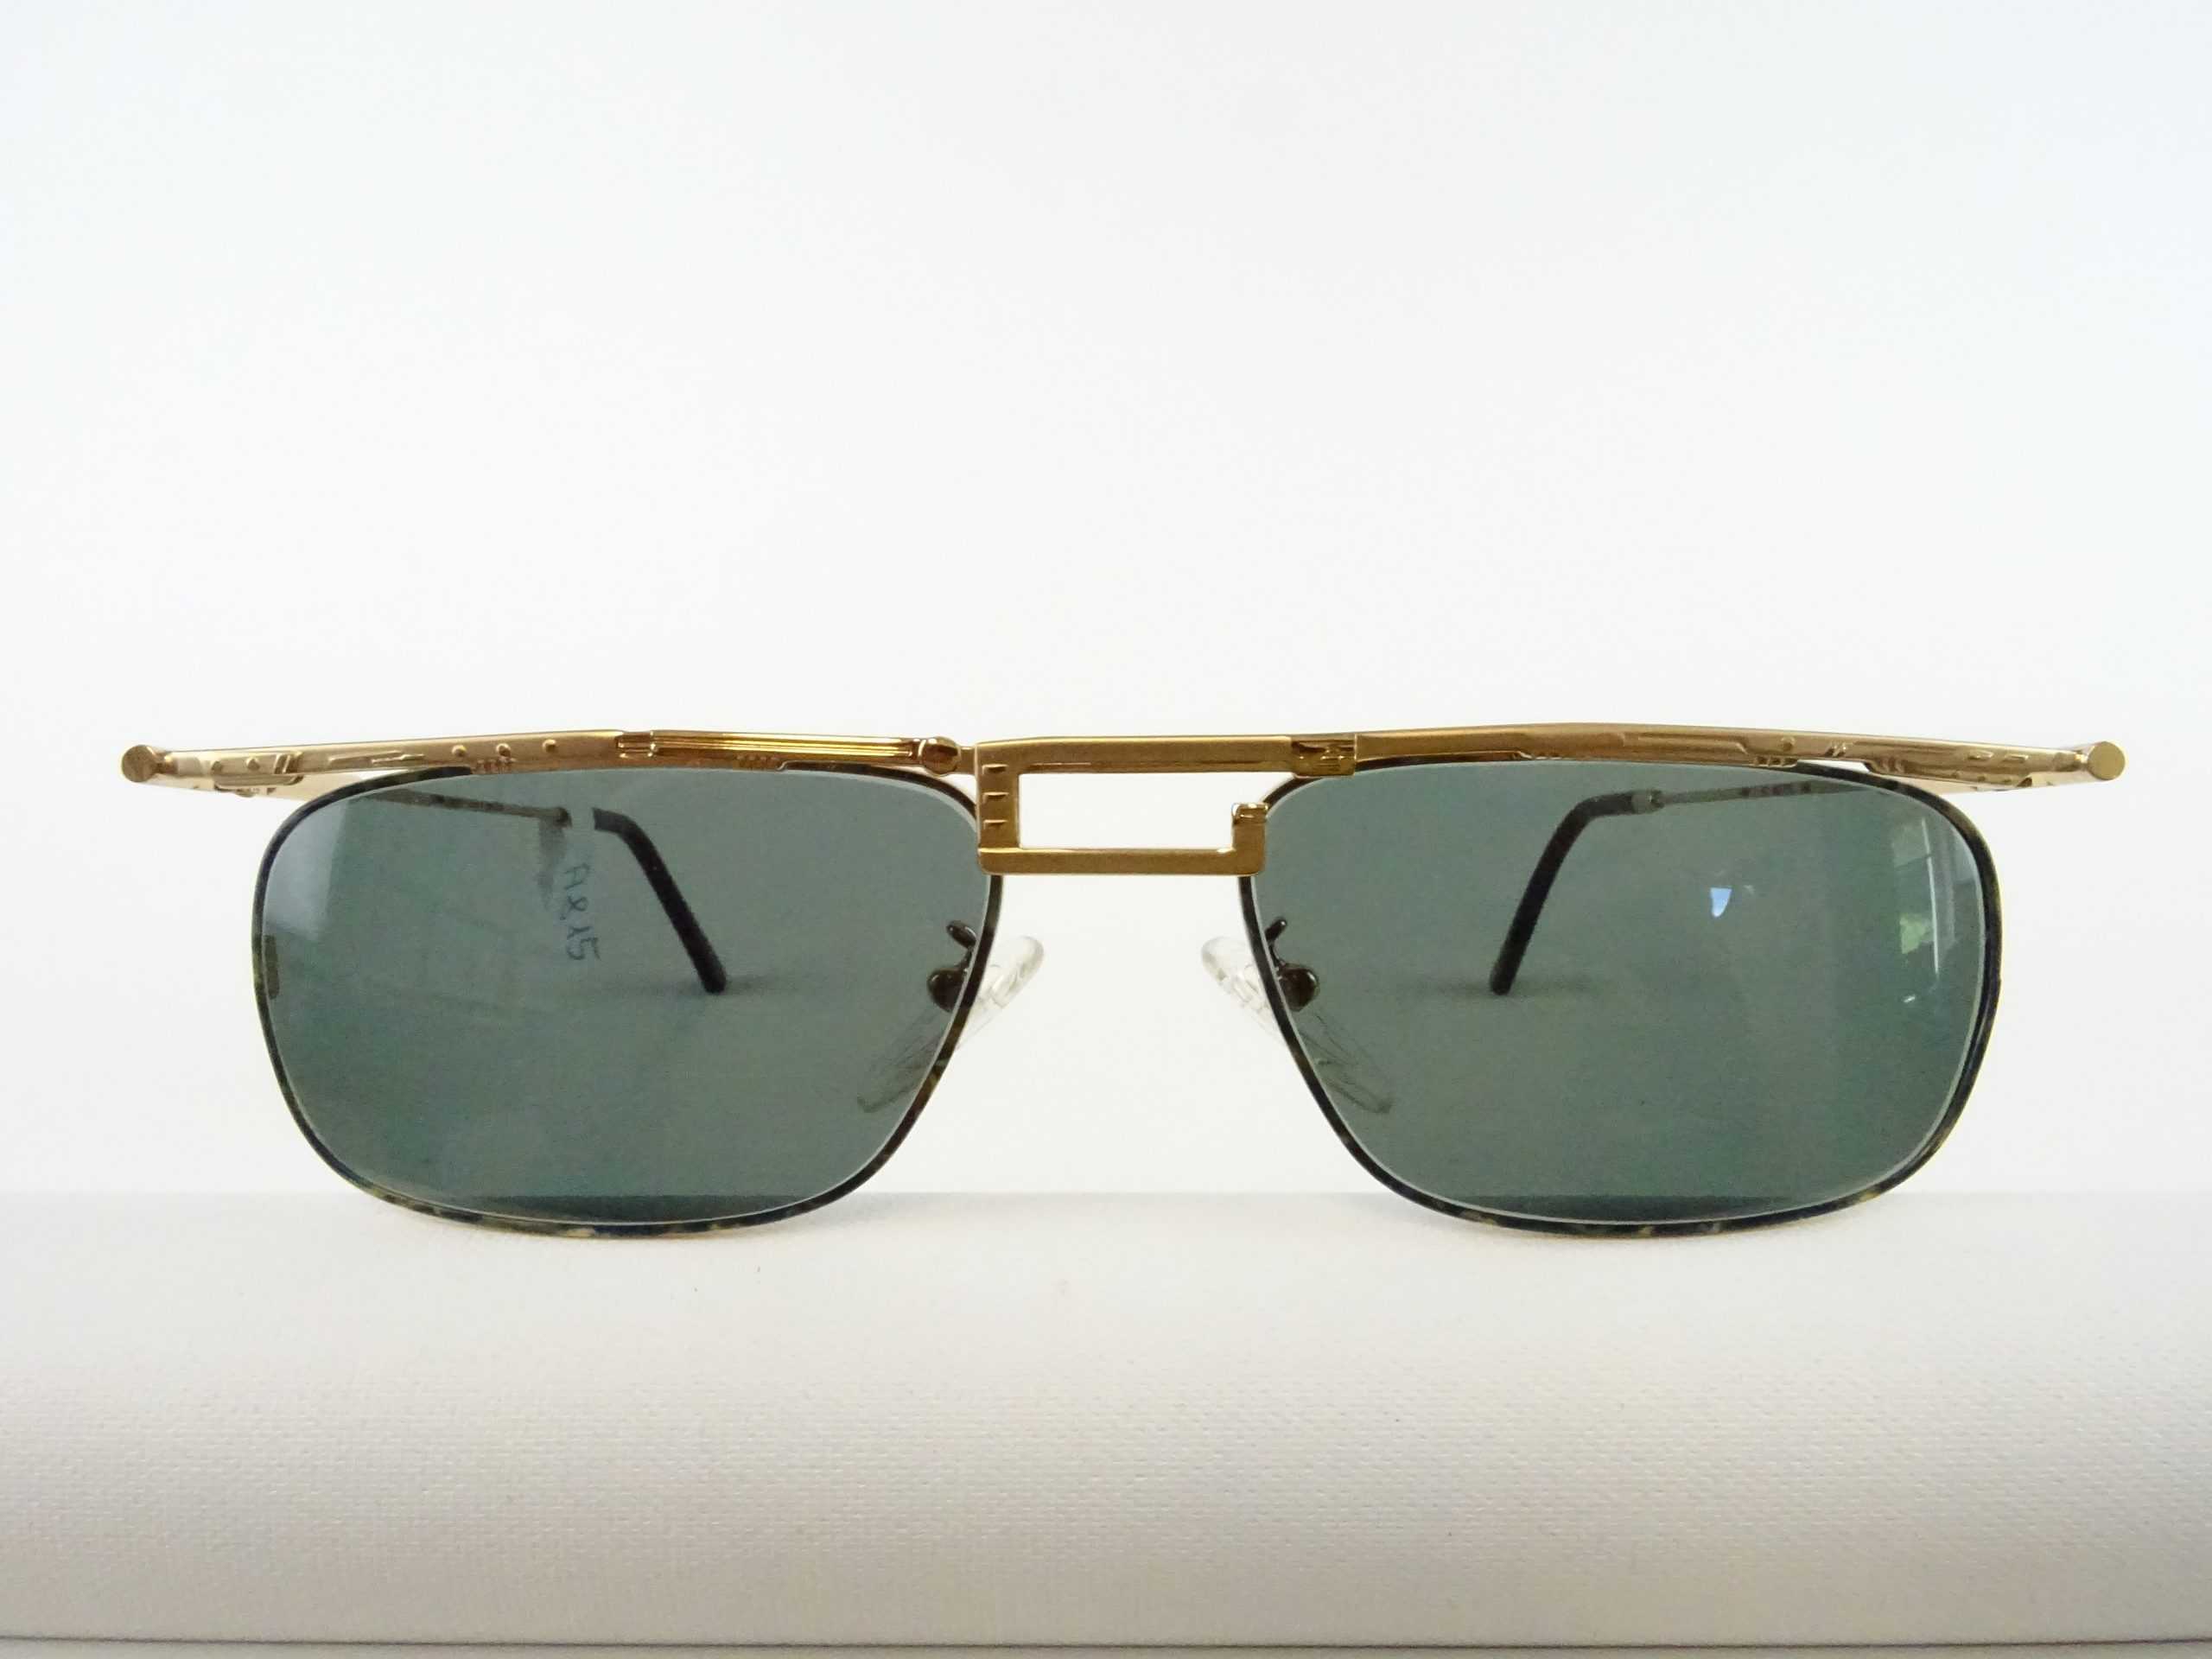 Balkenbrillen mit Vintage getönte Welt große/breite Gr. – Chai/Italy Kopfform Gläser Herren-Sonnenbrille Brillen L UV Schutz